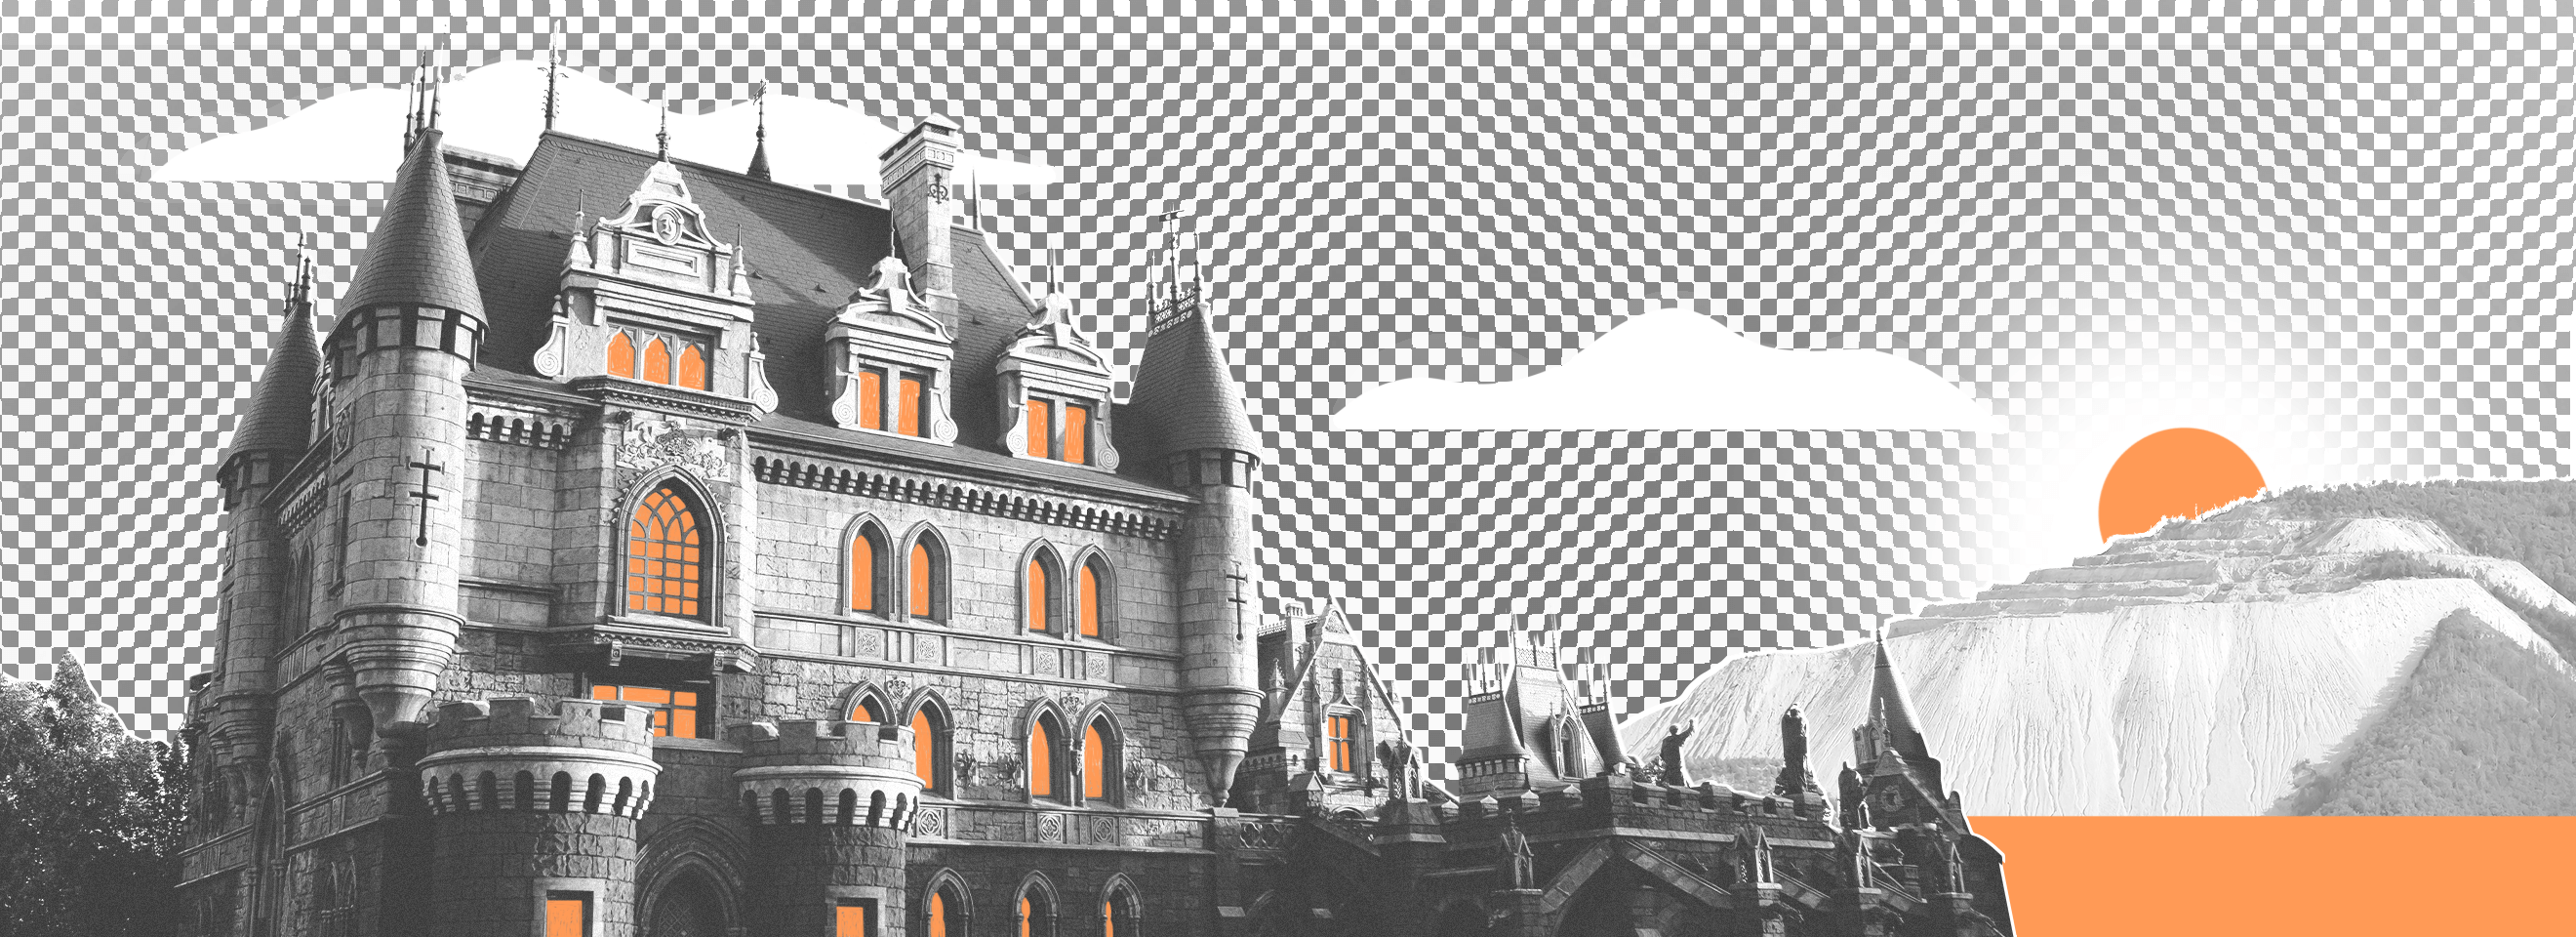 Полноразмерная обложка поста на тему: Жигулёвское море и горы, завод «АвтоВАЗ» и рыцарский замок — это всё Тольятти